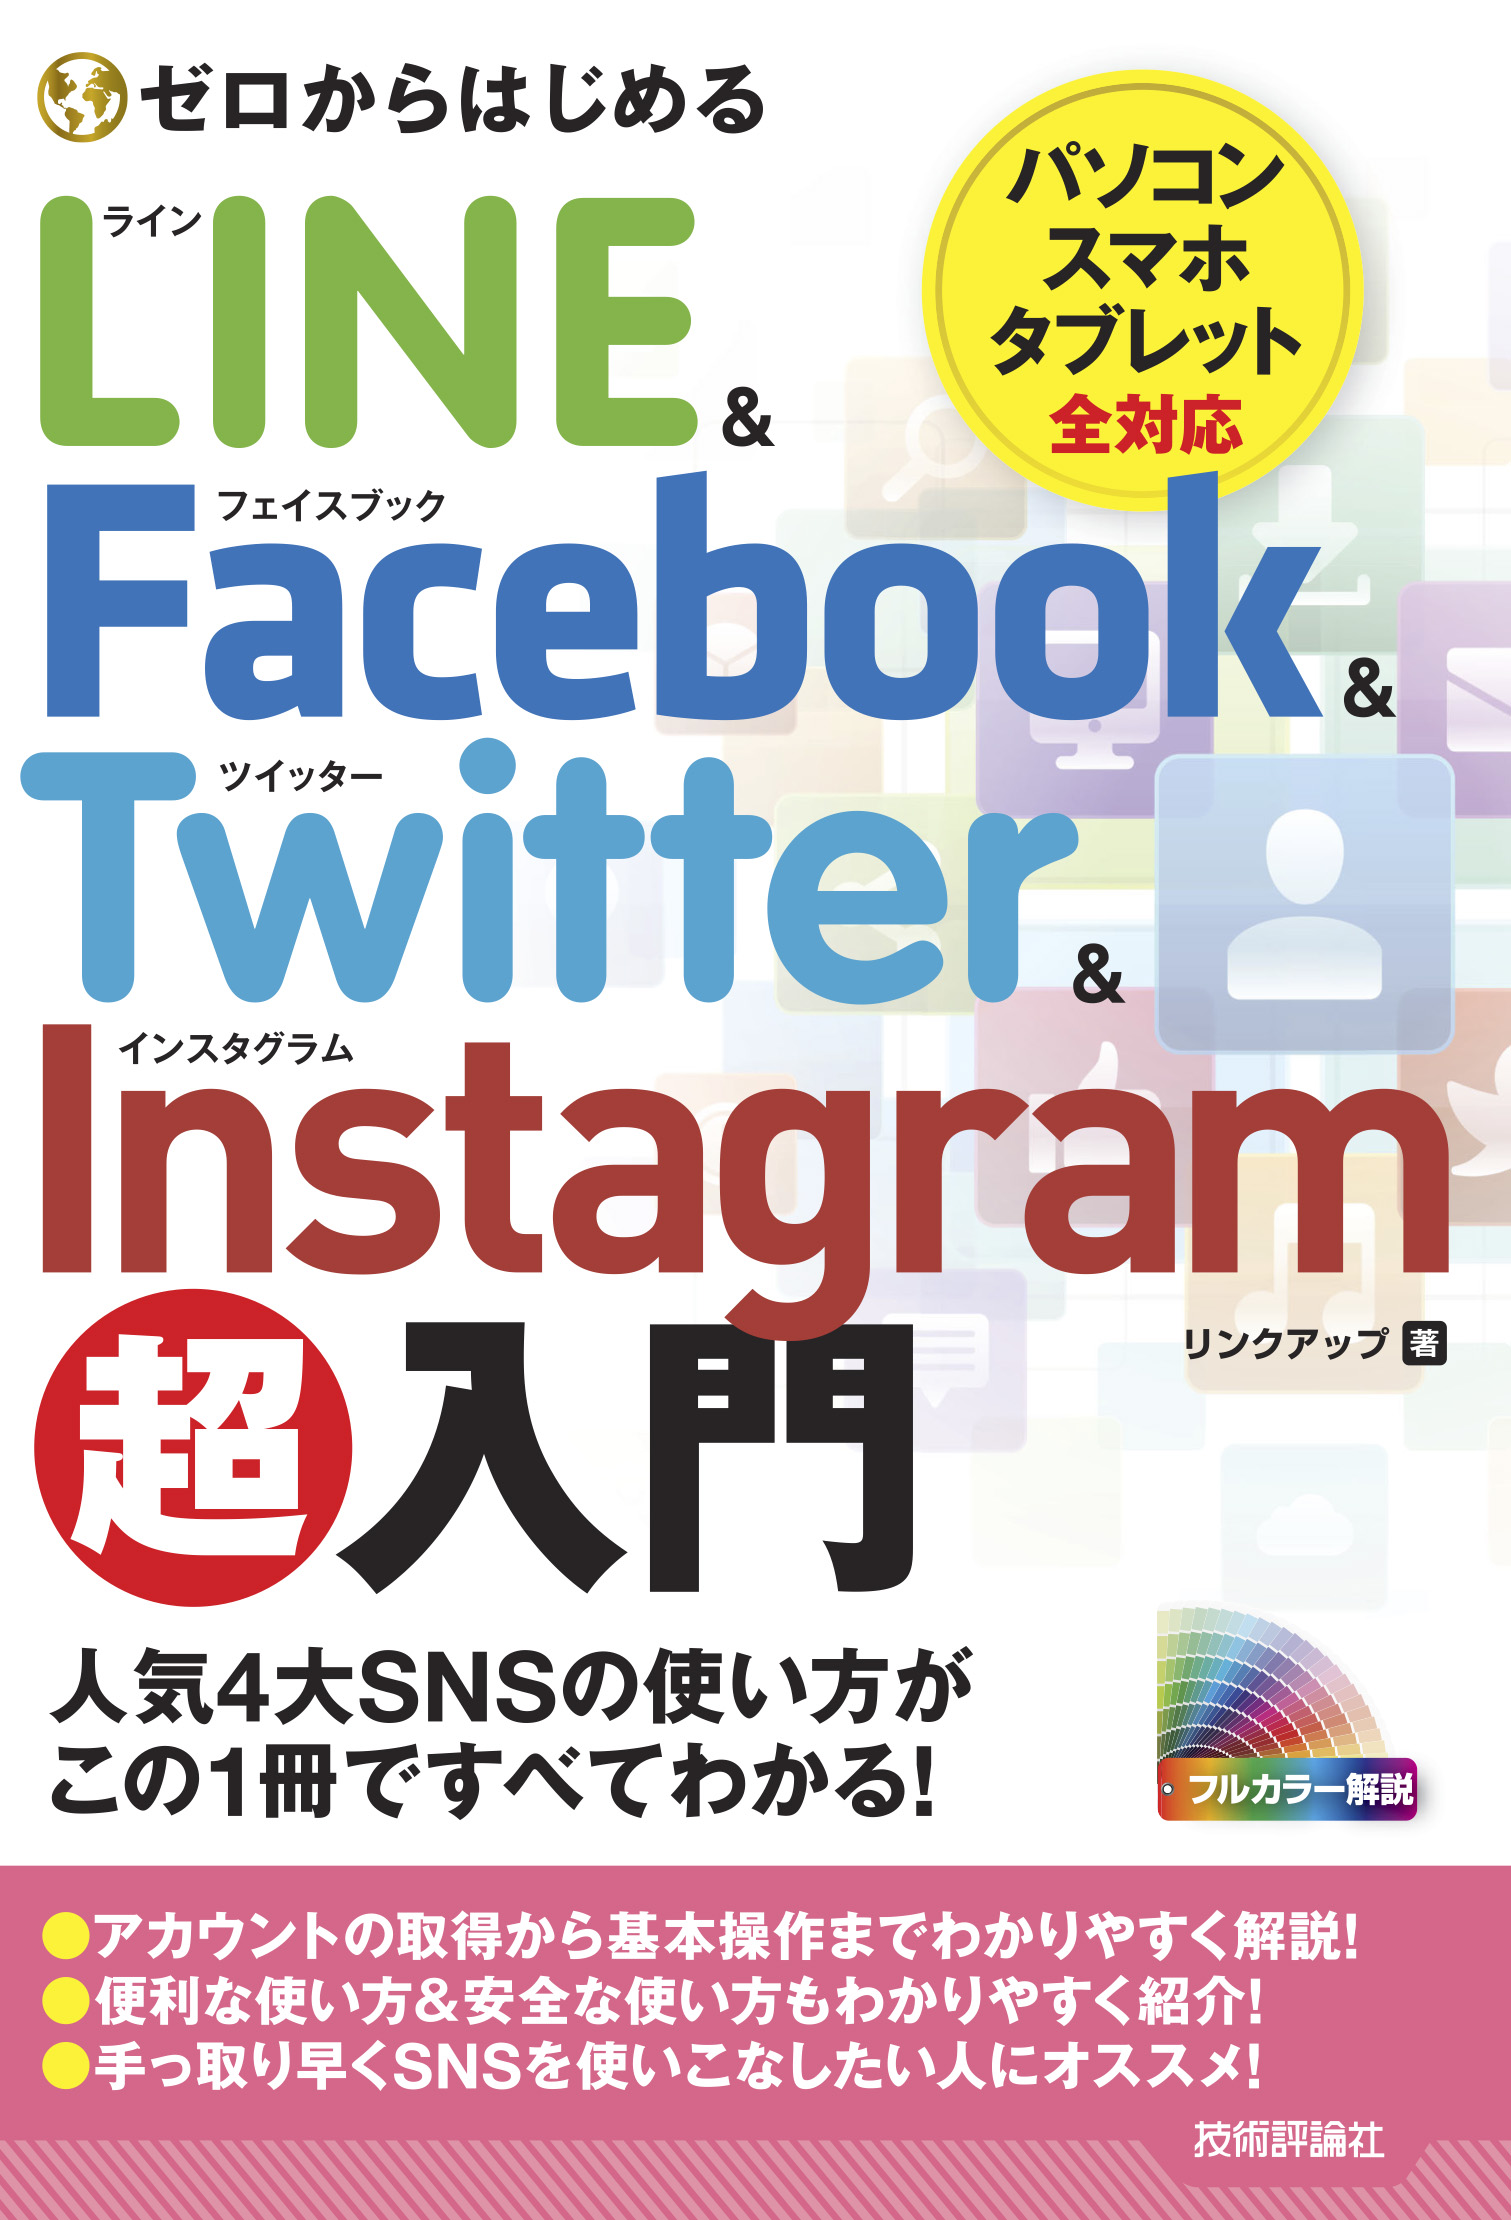 超美品の LINE Instagram Facebook Twitter基本やりたいこと140 田口和裕 森嶋良子 毛利勝久 